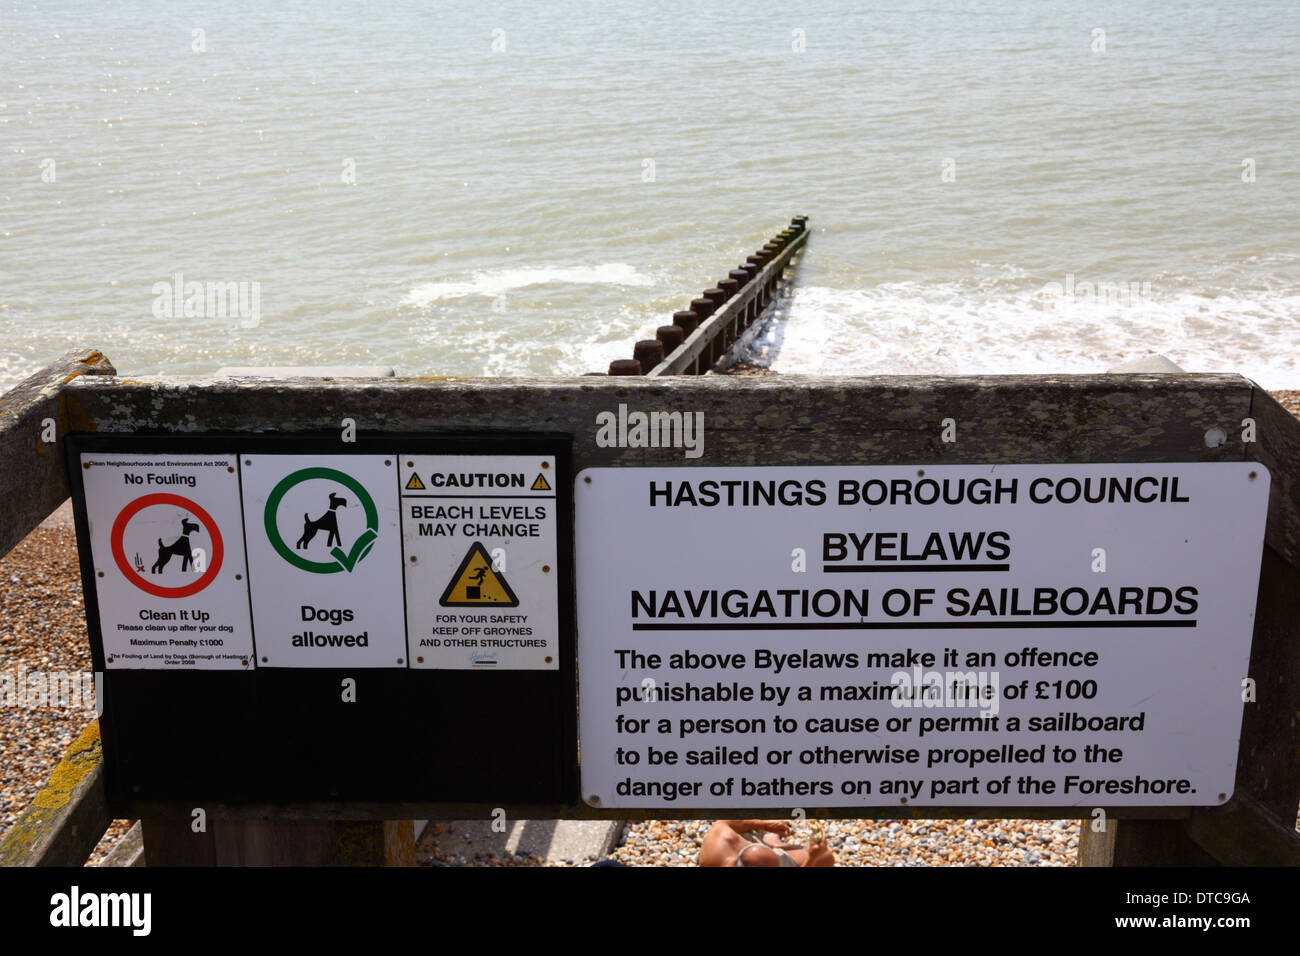 Chiens acceptés, pas de salissure de chien, le niveau de la plage peut changer et les panneaux de planche à voile peuvent être utilisés sur le point d'accès à la plage, St Leonards on Sea, East Sussex Banque D'Images